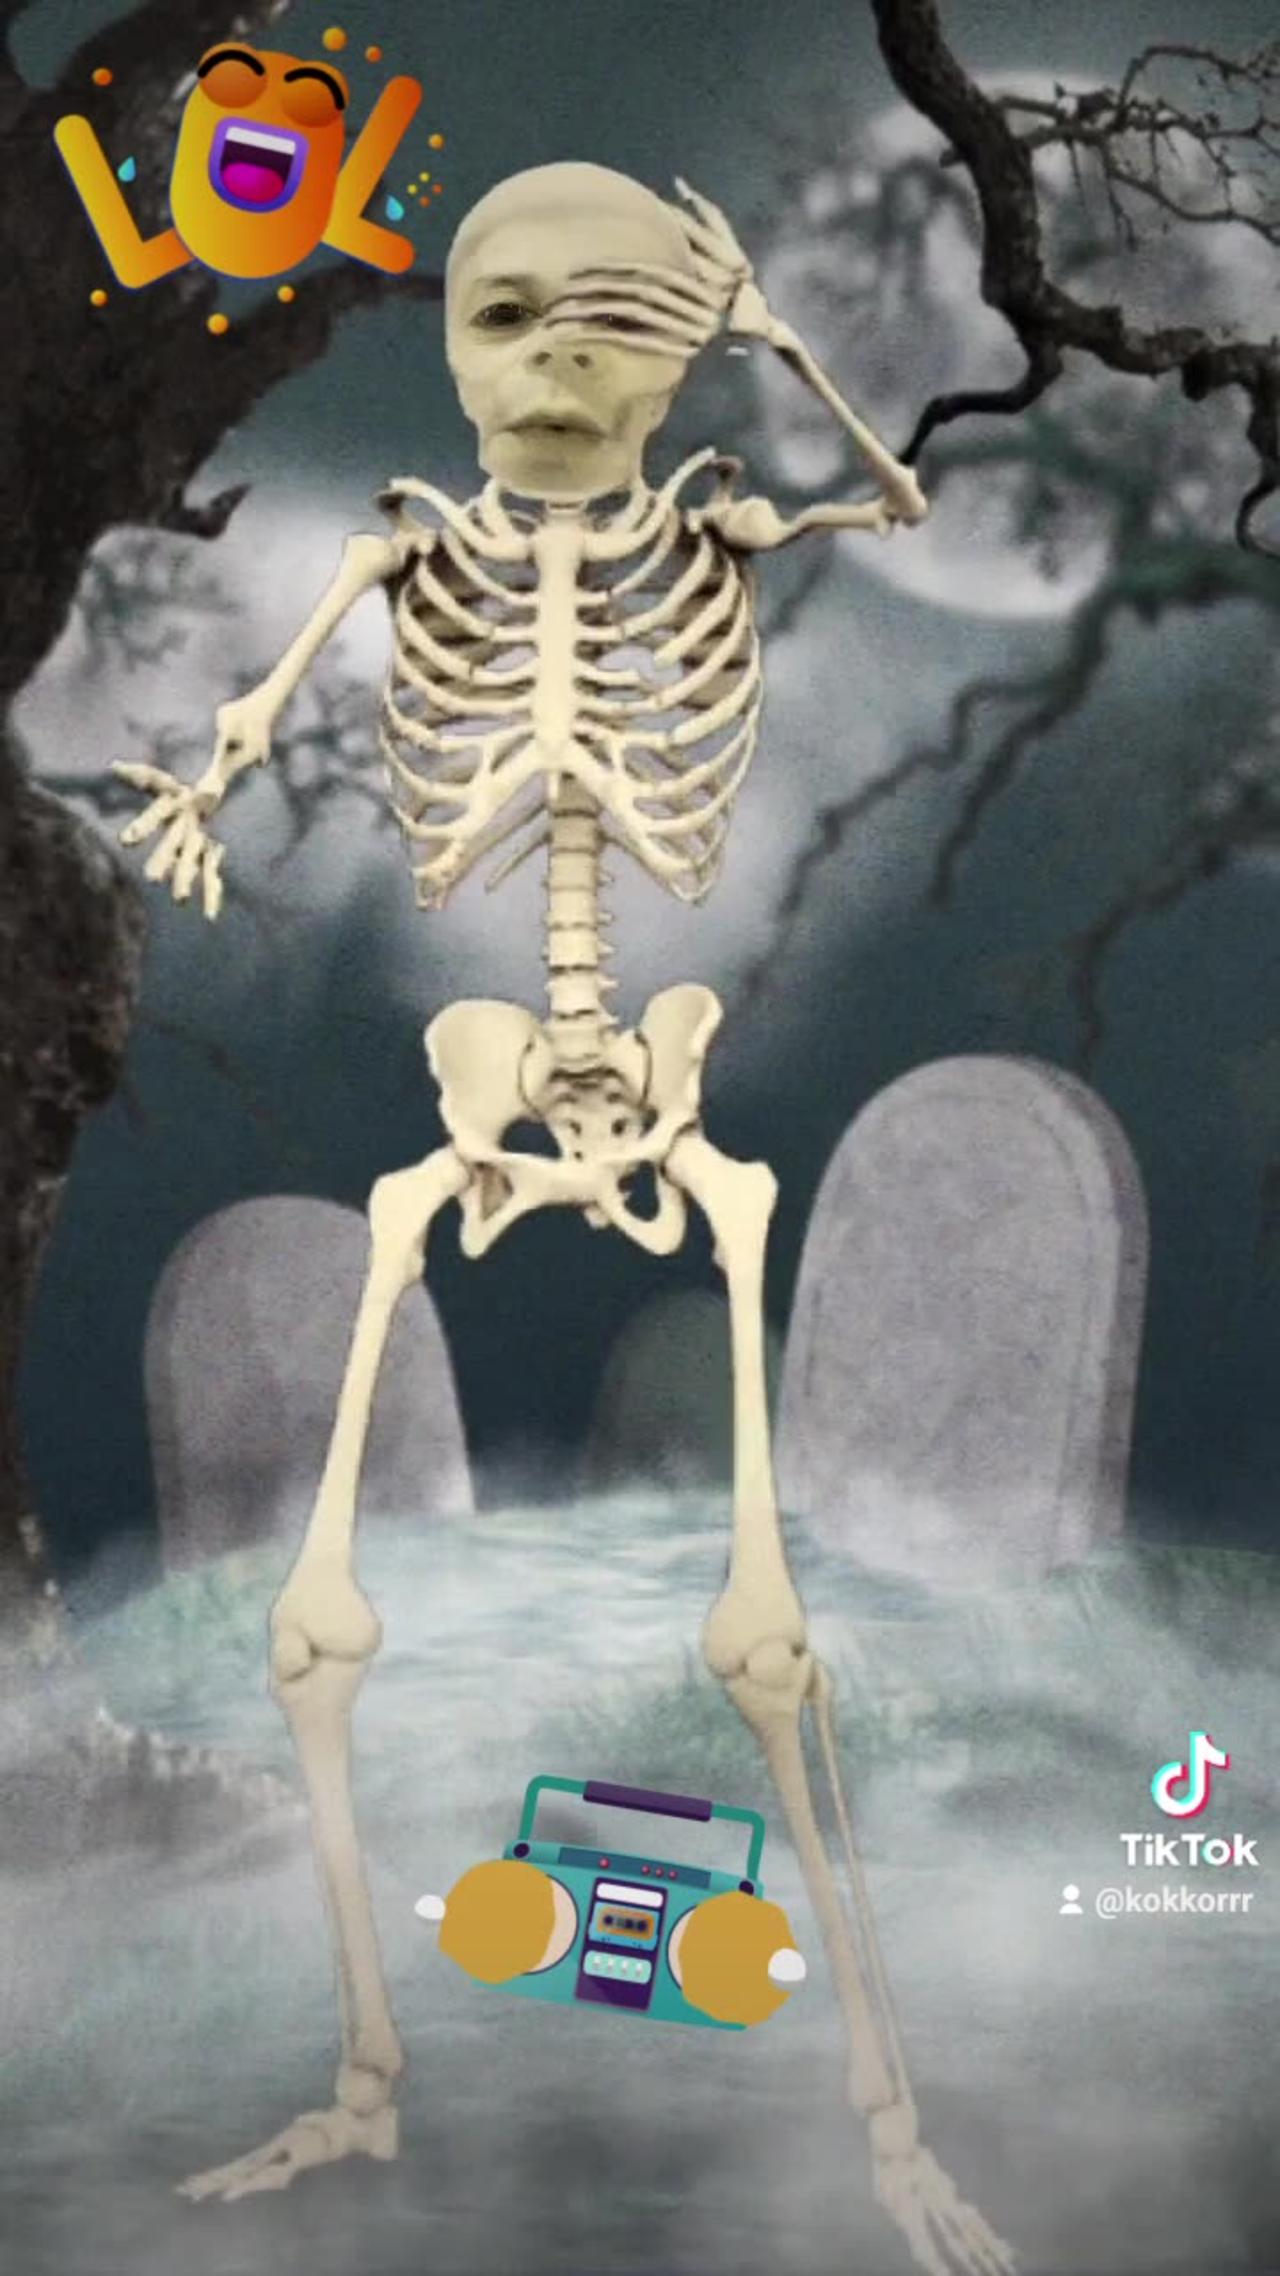 Skeleton dance, happy skeleton dances whistles at night, just having fun, moving bones. macarena